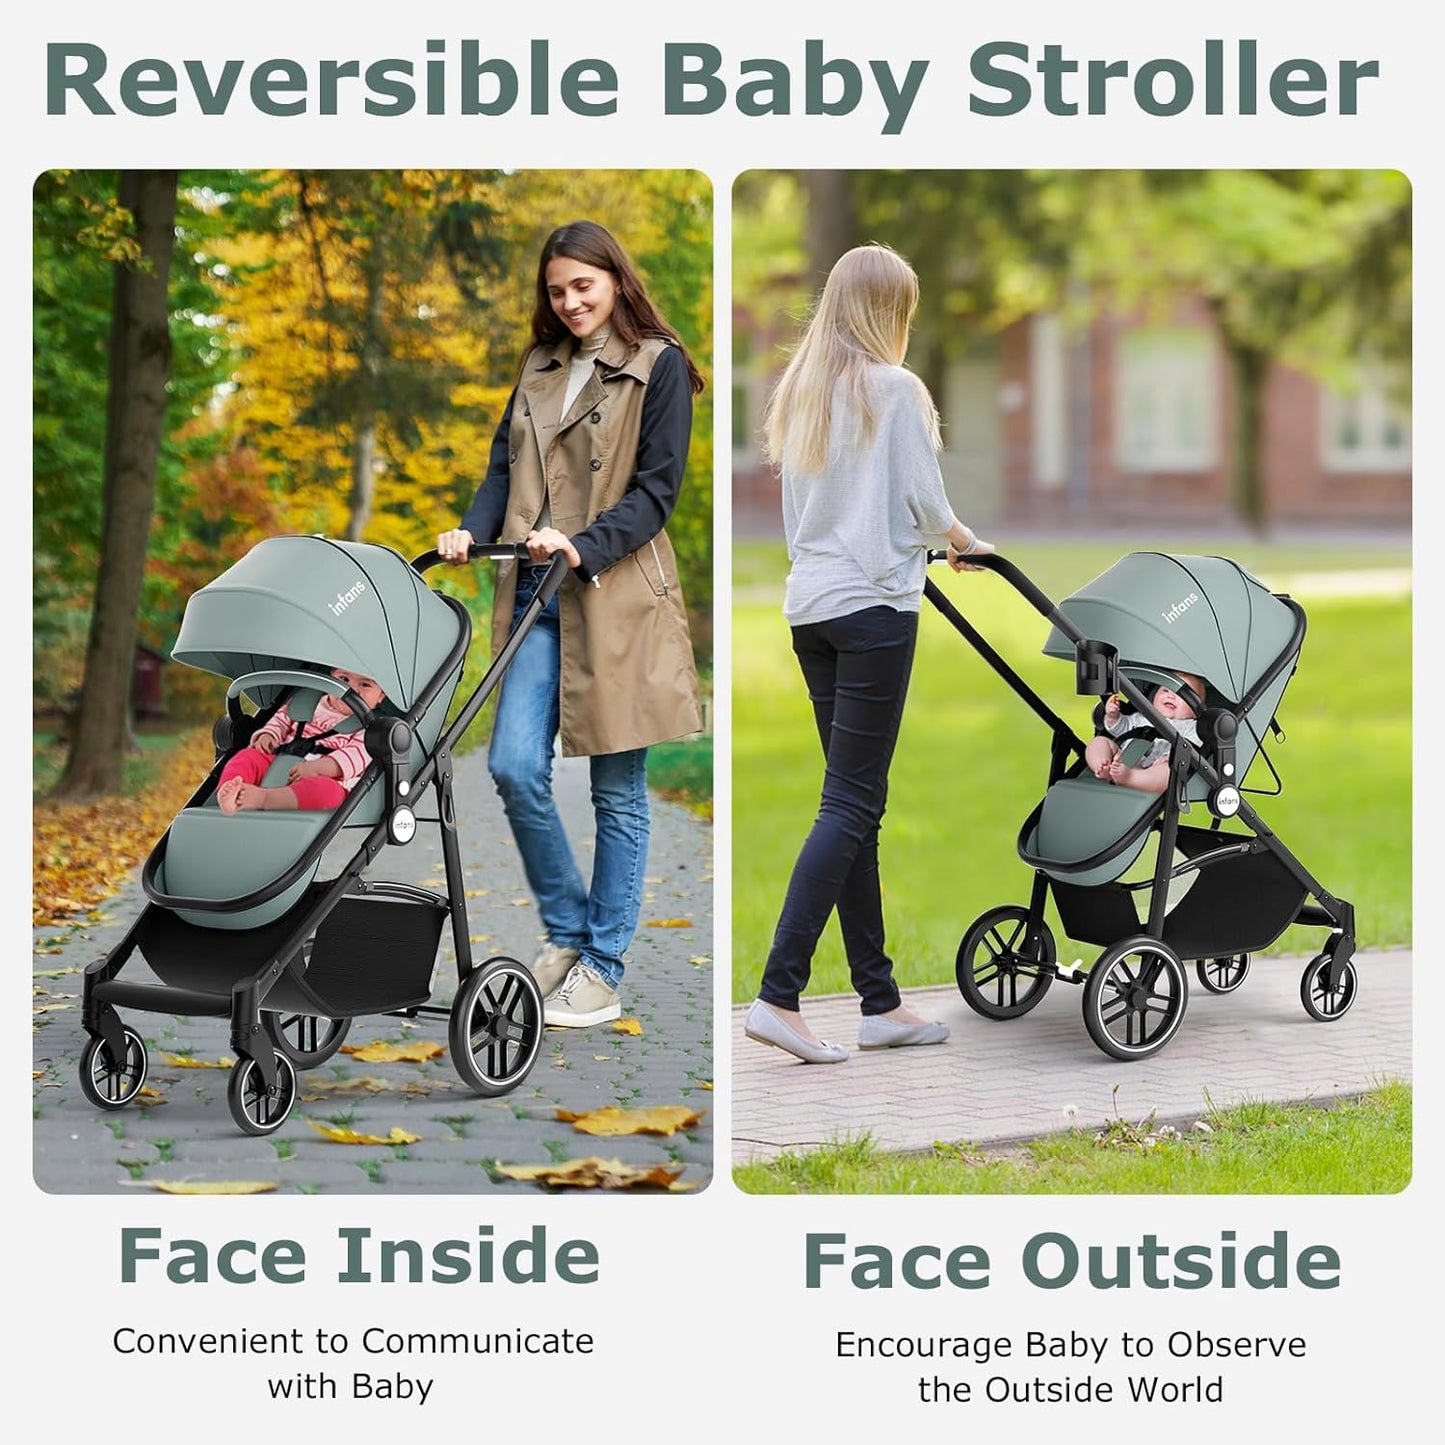 2 in 1 Baby Stroller, High Landscape Infant Stroller & Reversible Bassinet Pram, Foldable Pushchair with Adjustable Canopy, Cup Holder, Storage Basket, Suspension Wheels (Green)